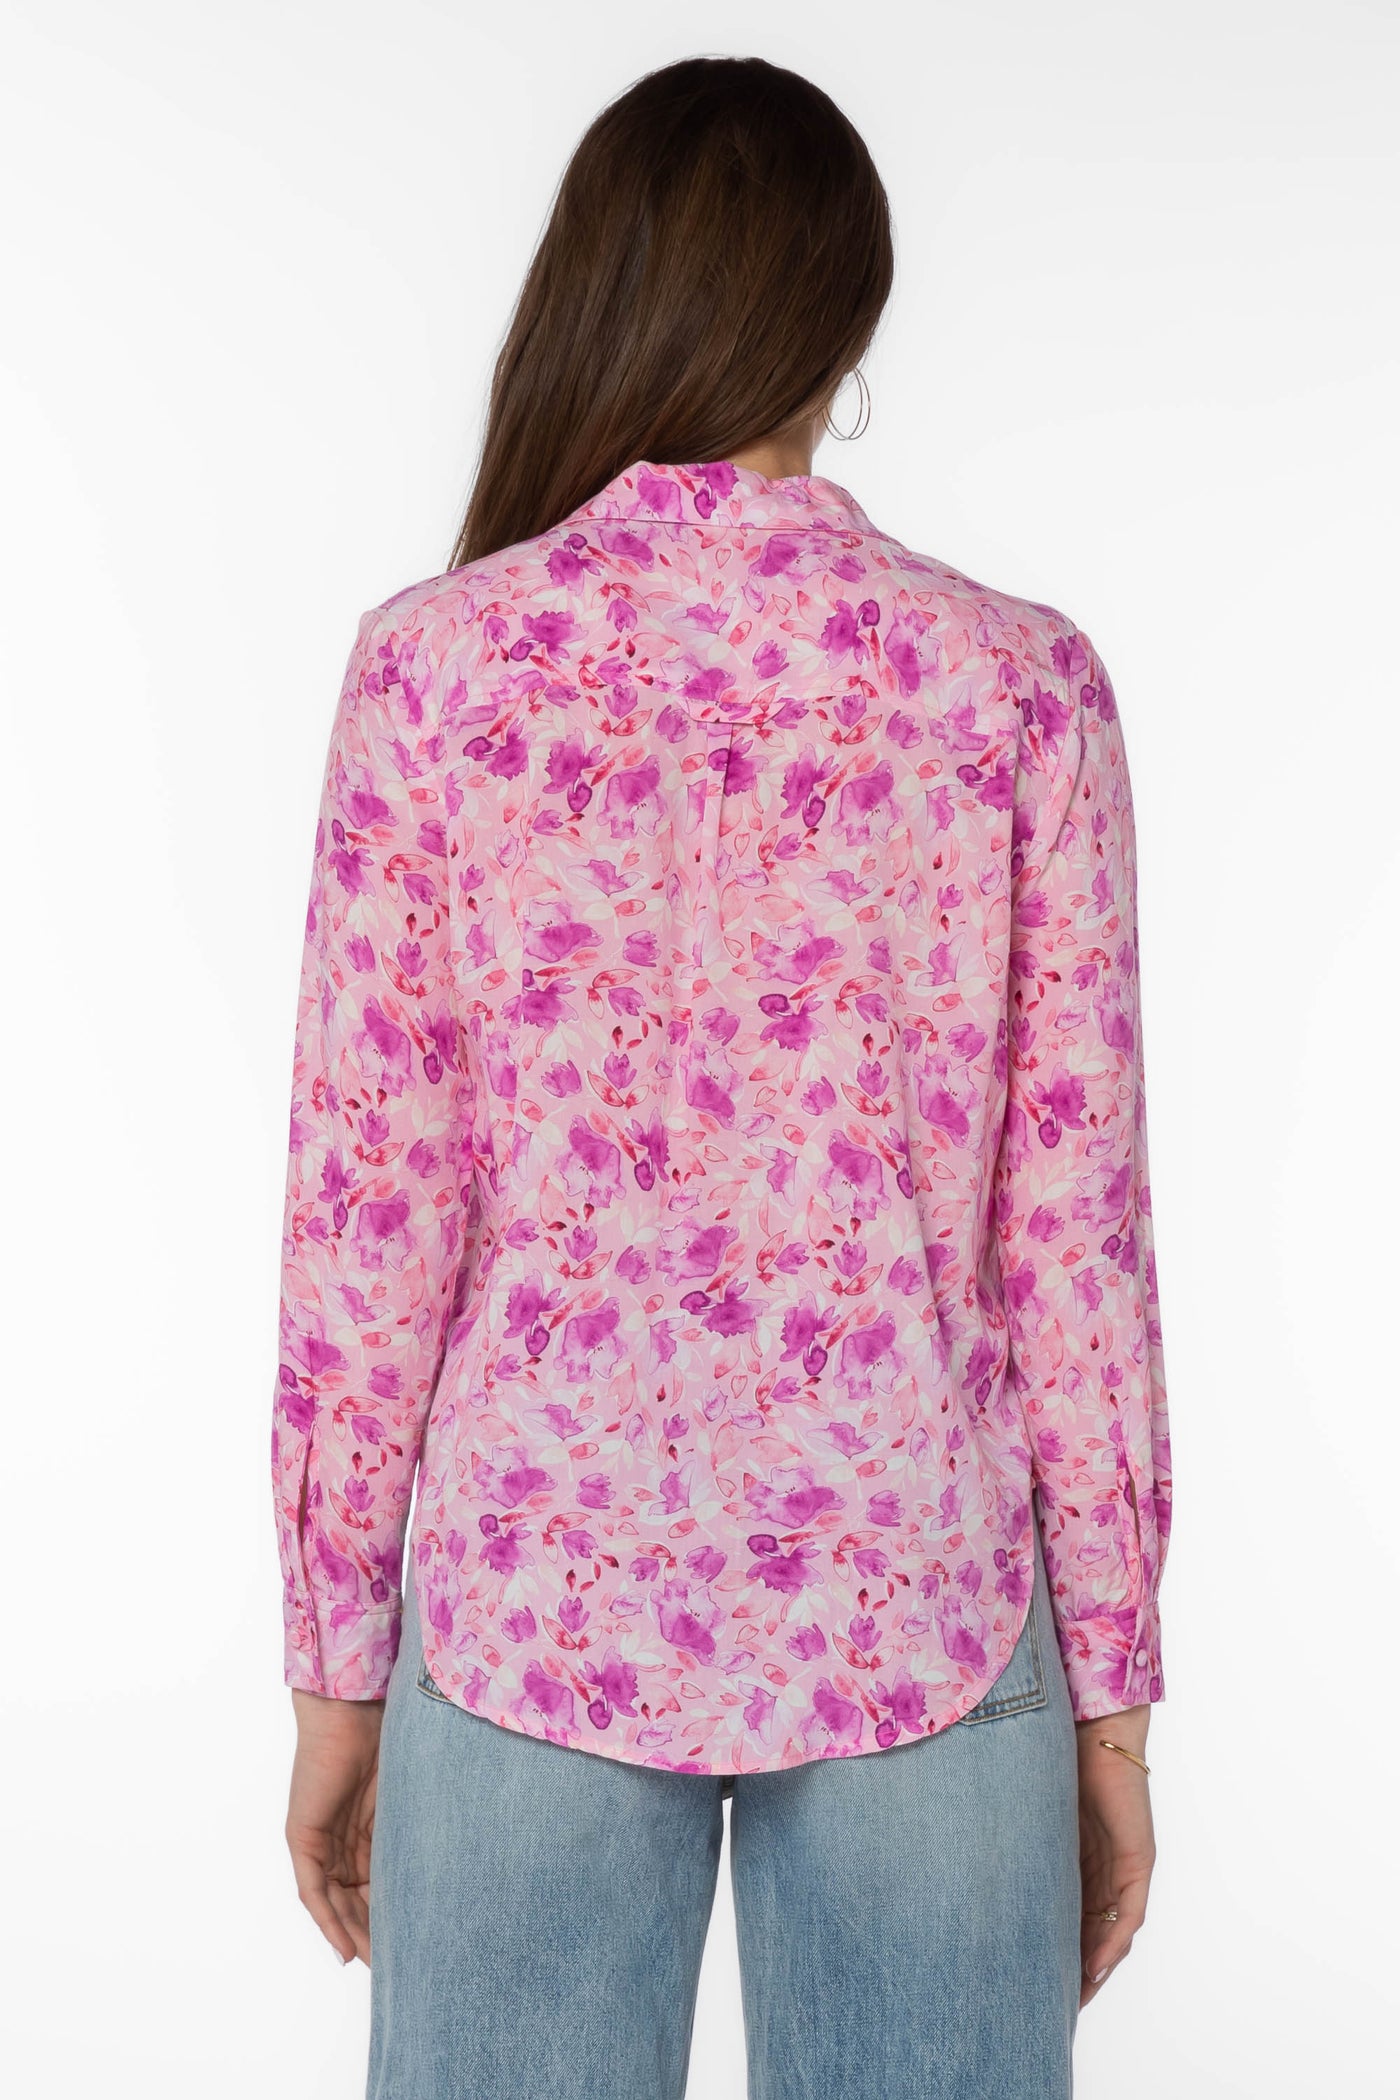 Eleni Pink Shirt - Tops - Velvet Heart Clothing